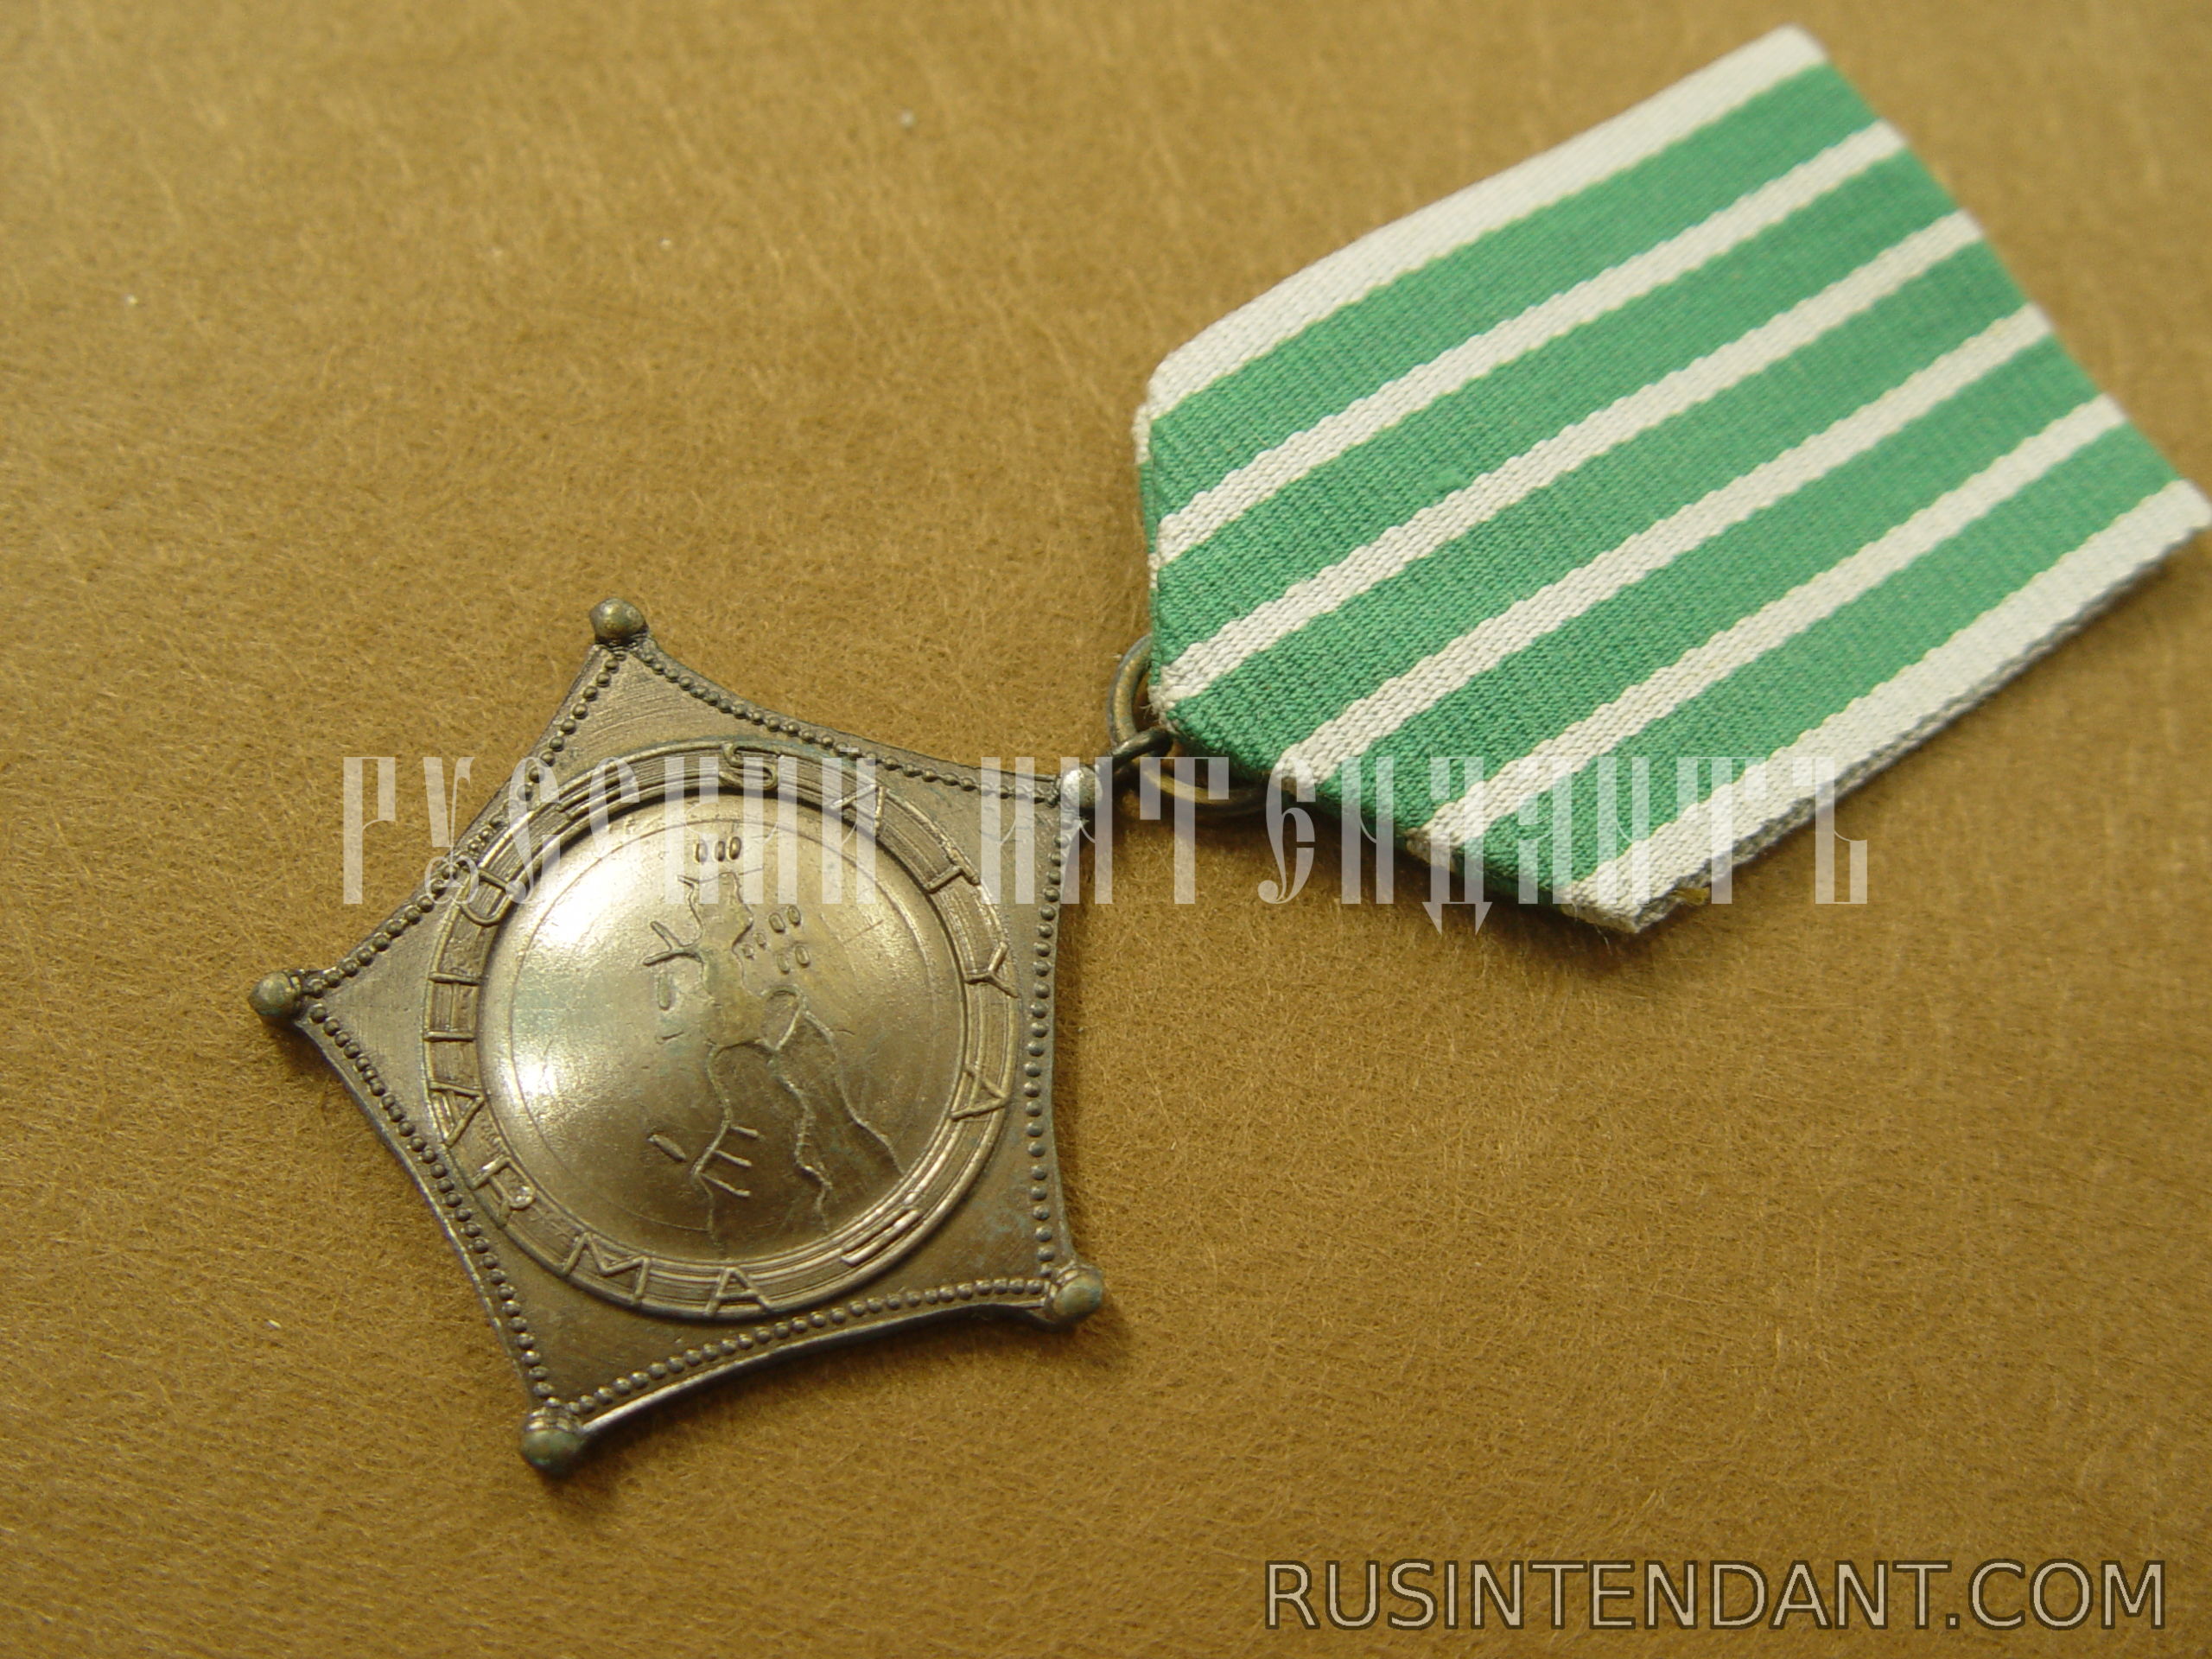 Фото 3: Военная медаль "За операцию Ириан-Джая" 